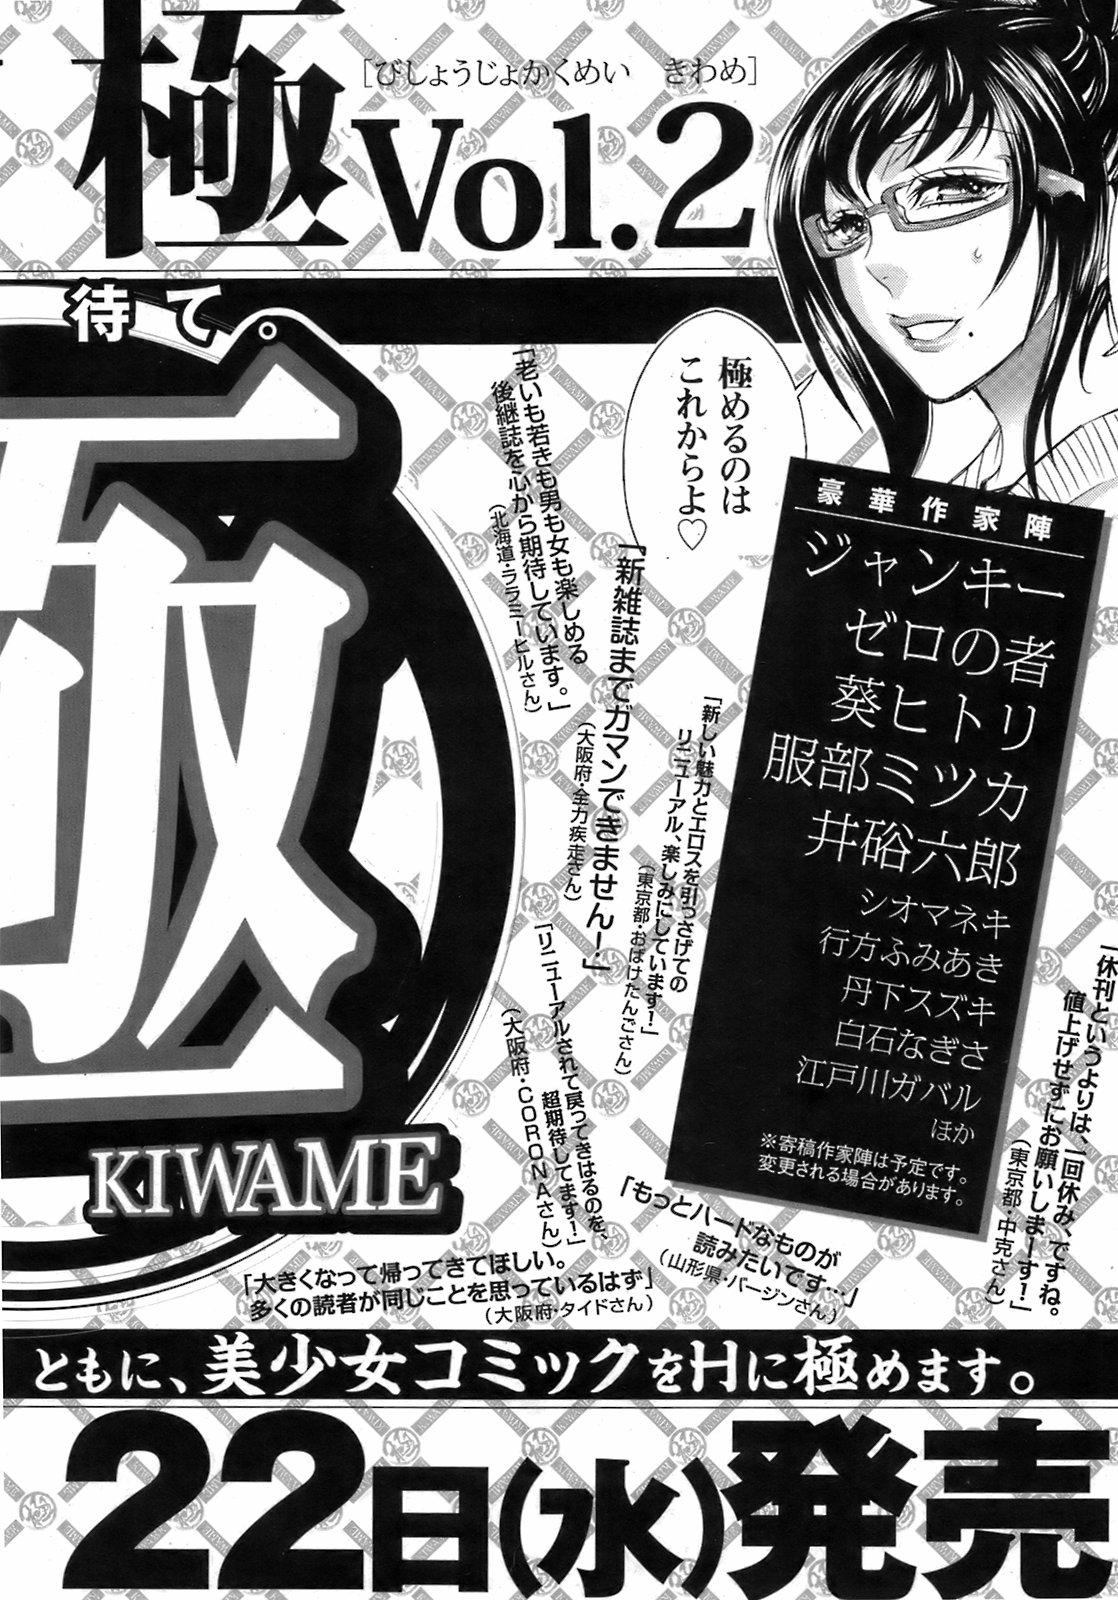 Bishoujo Kakumei KIWAME 2009-04 Vol. 1 210